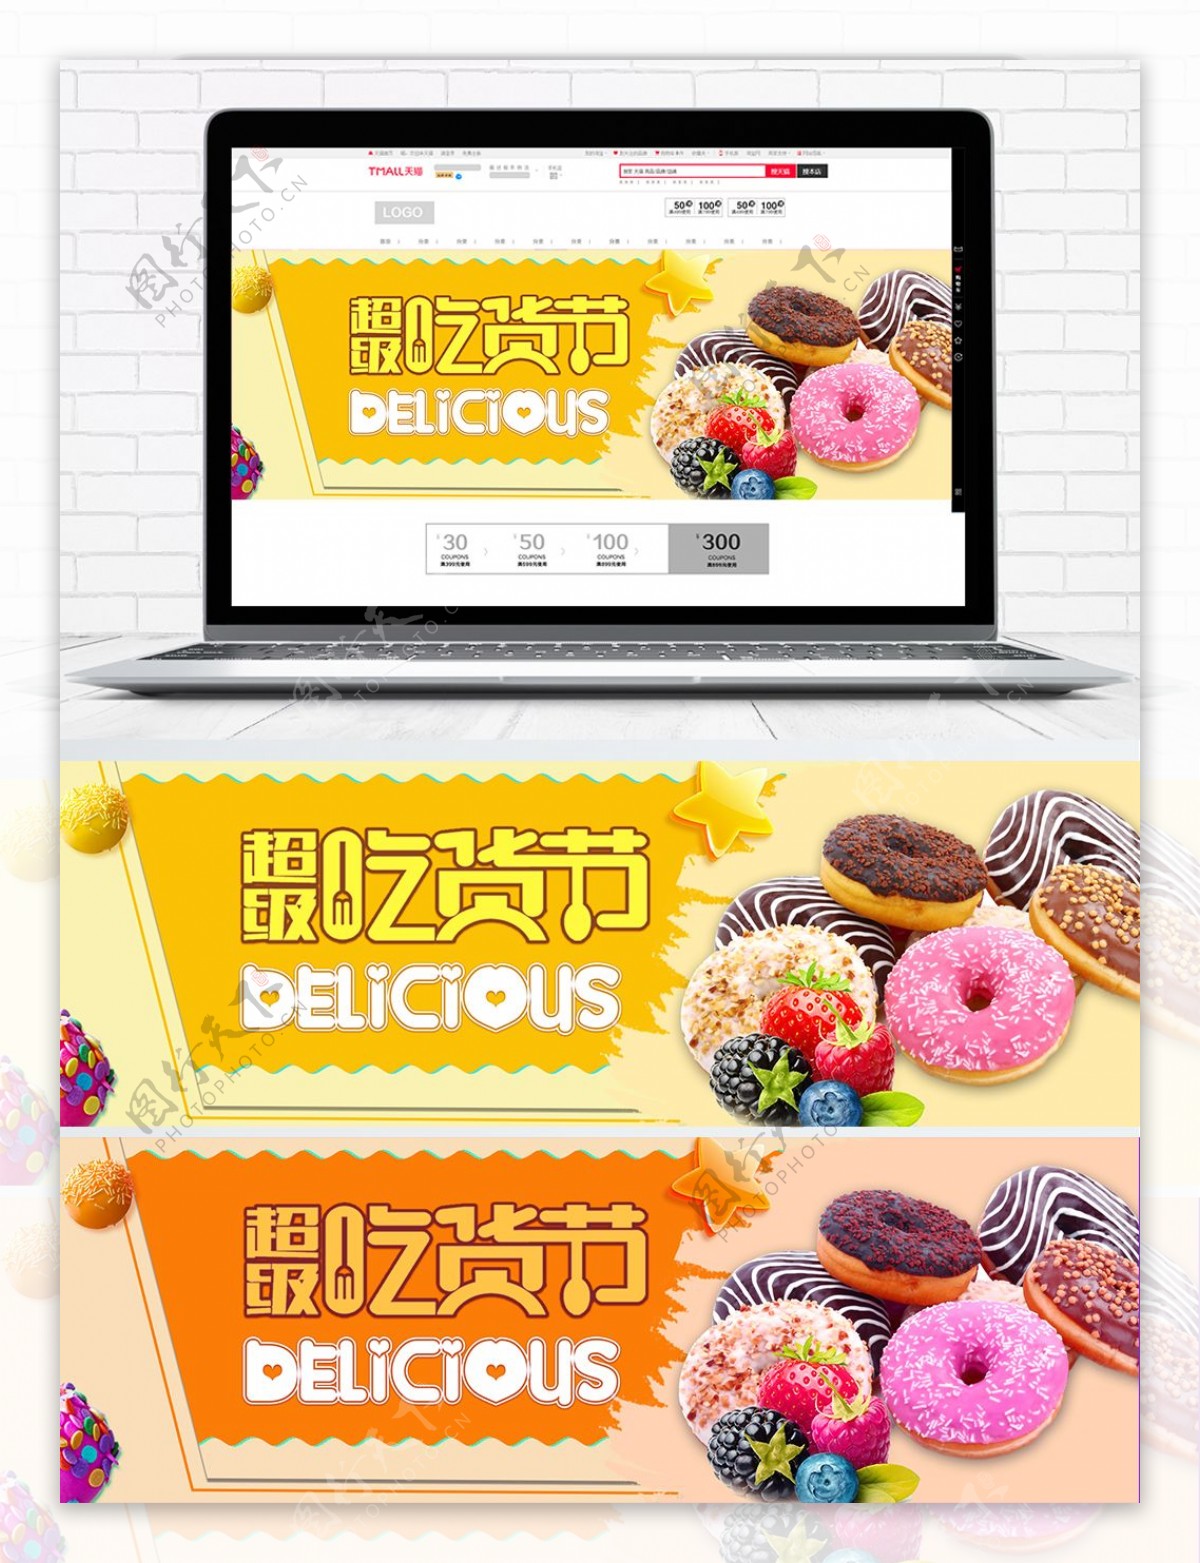 天猫淘宝吃货节甜品美食海报设计